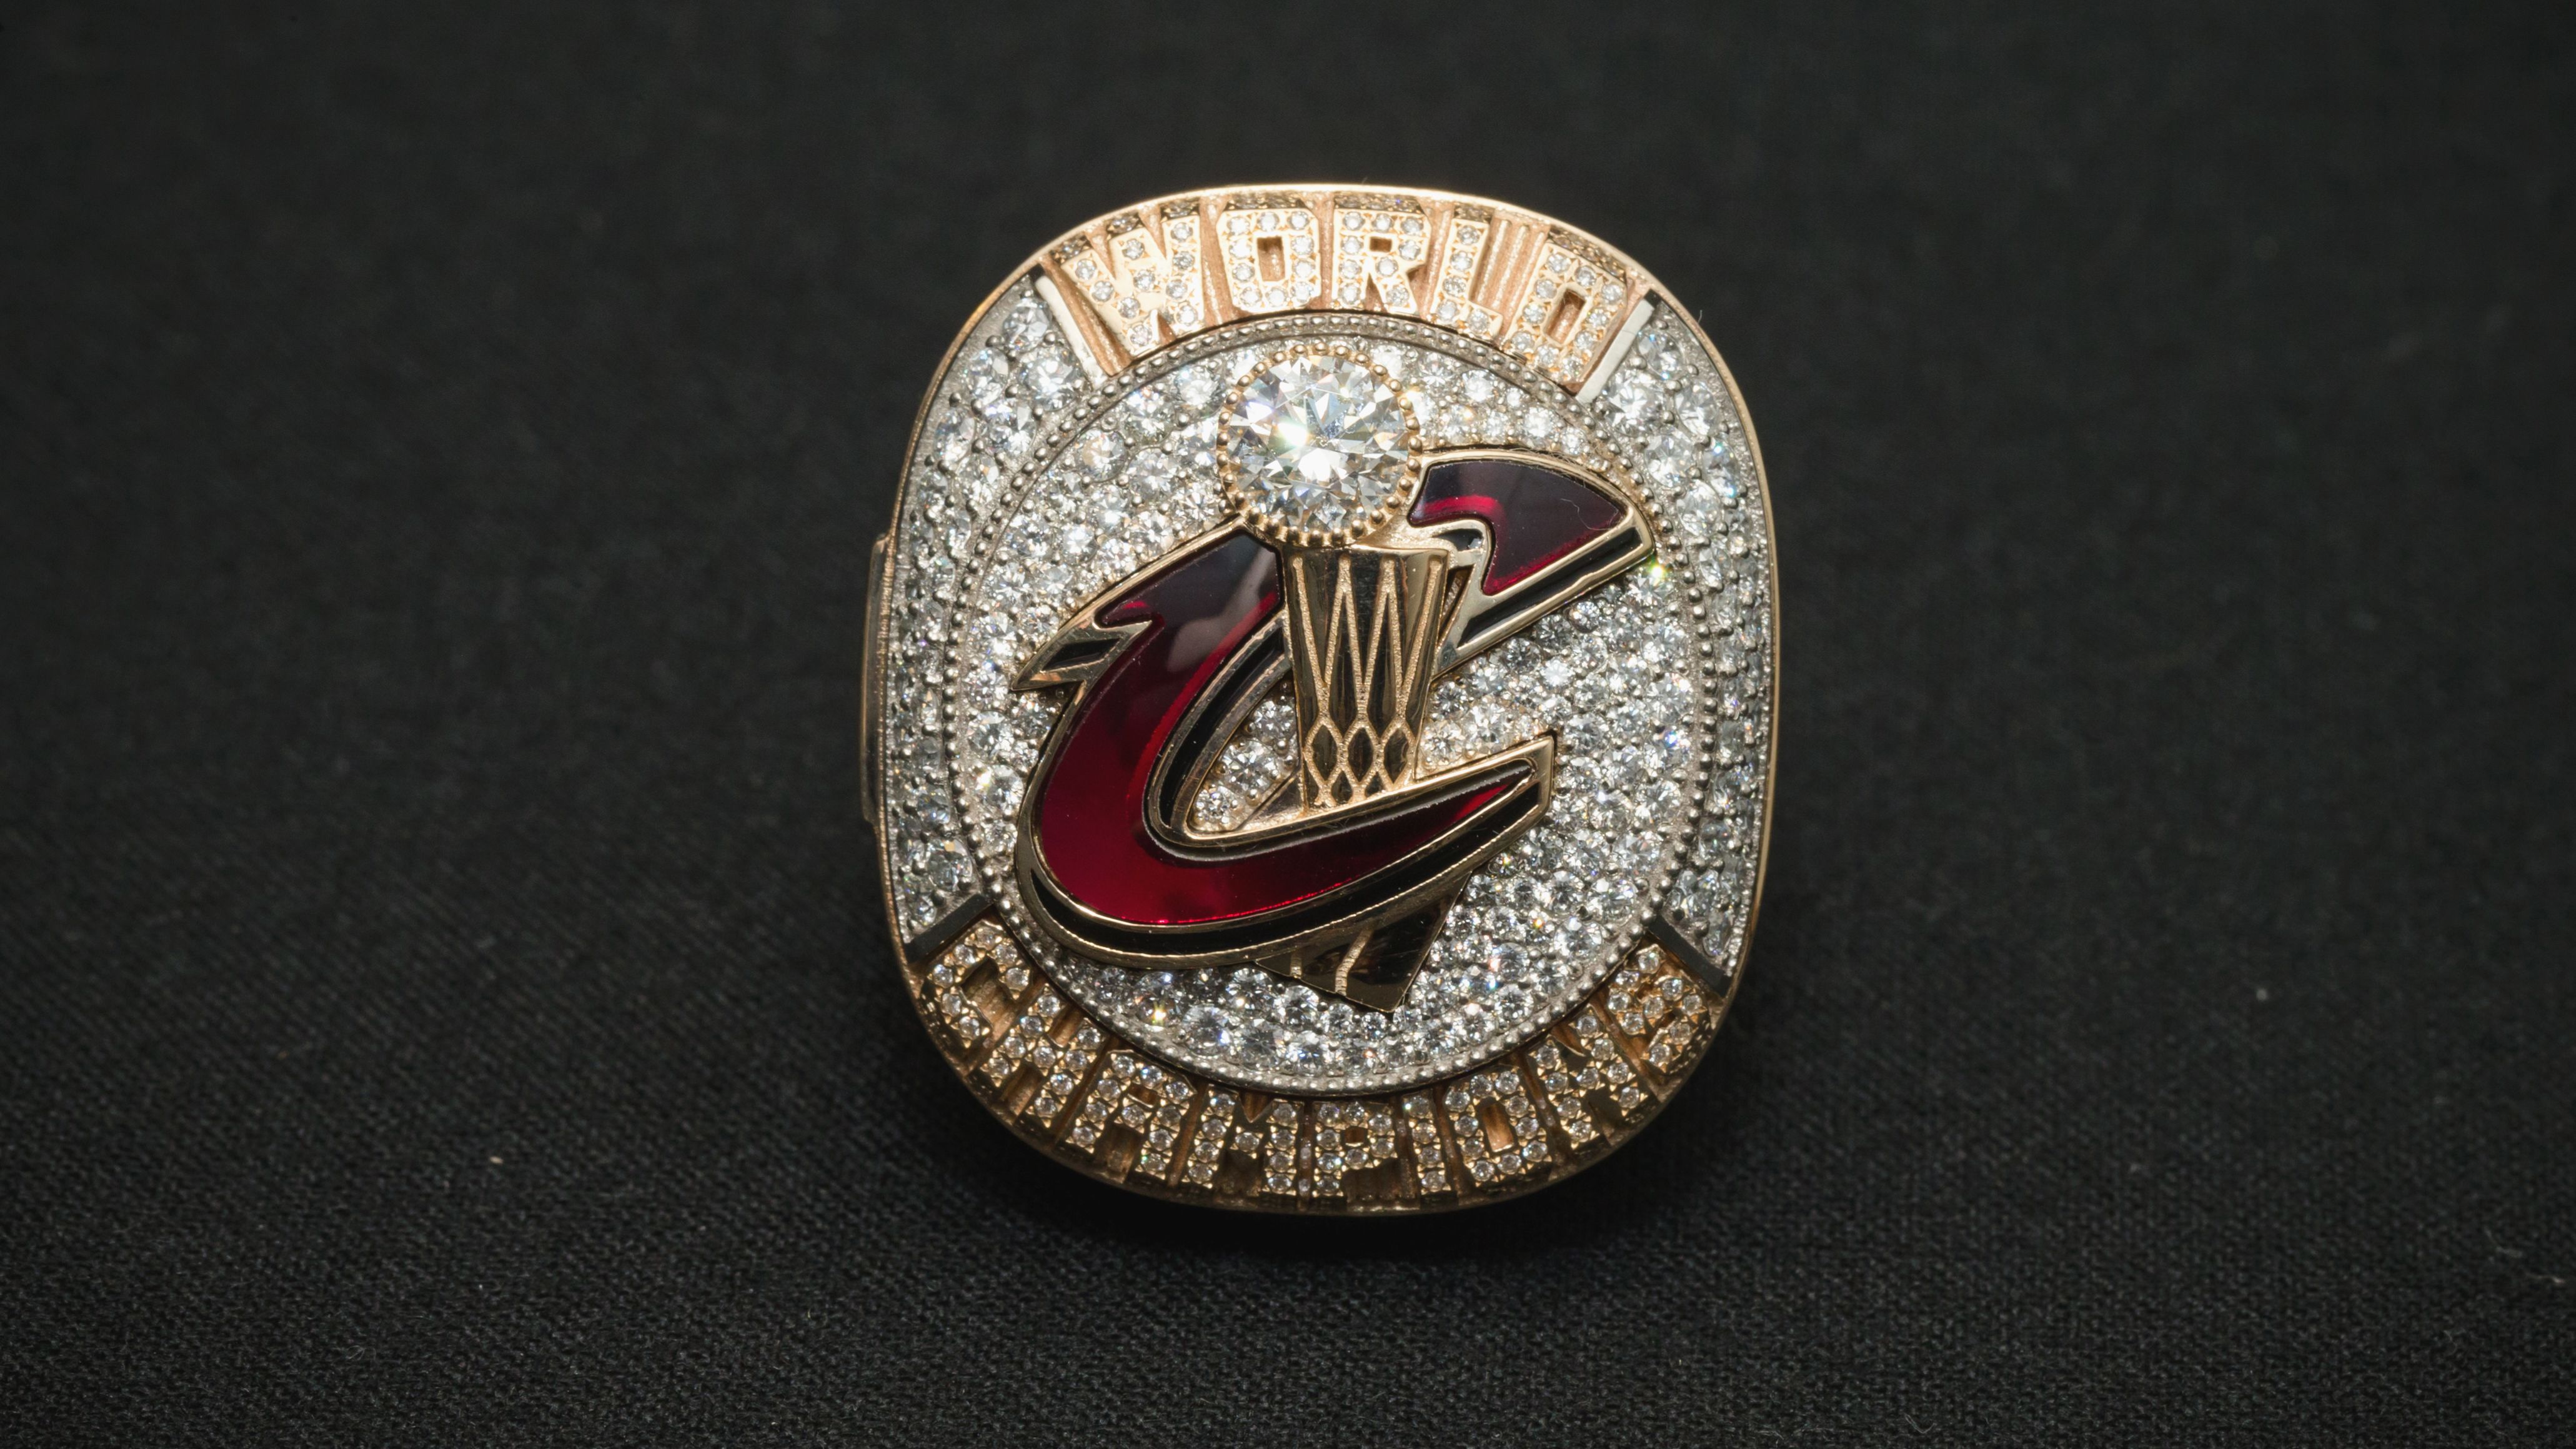 2015 Game-Used Regular Season 2014 World Series Championship Ring